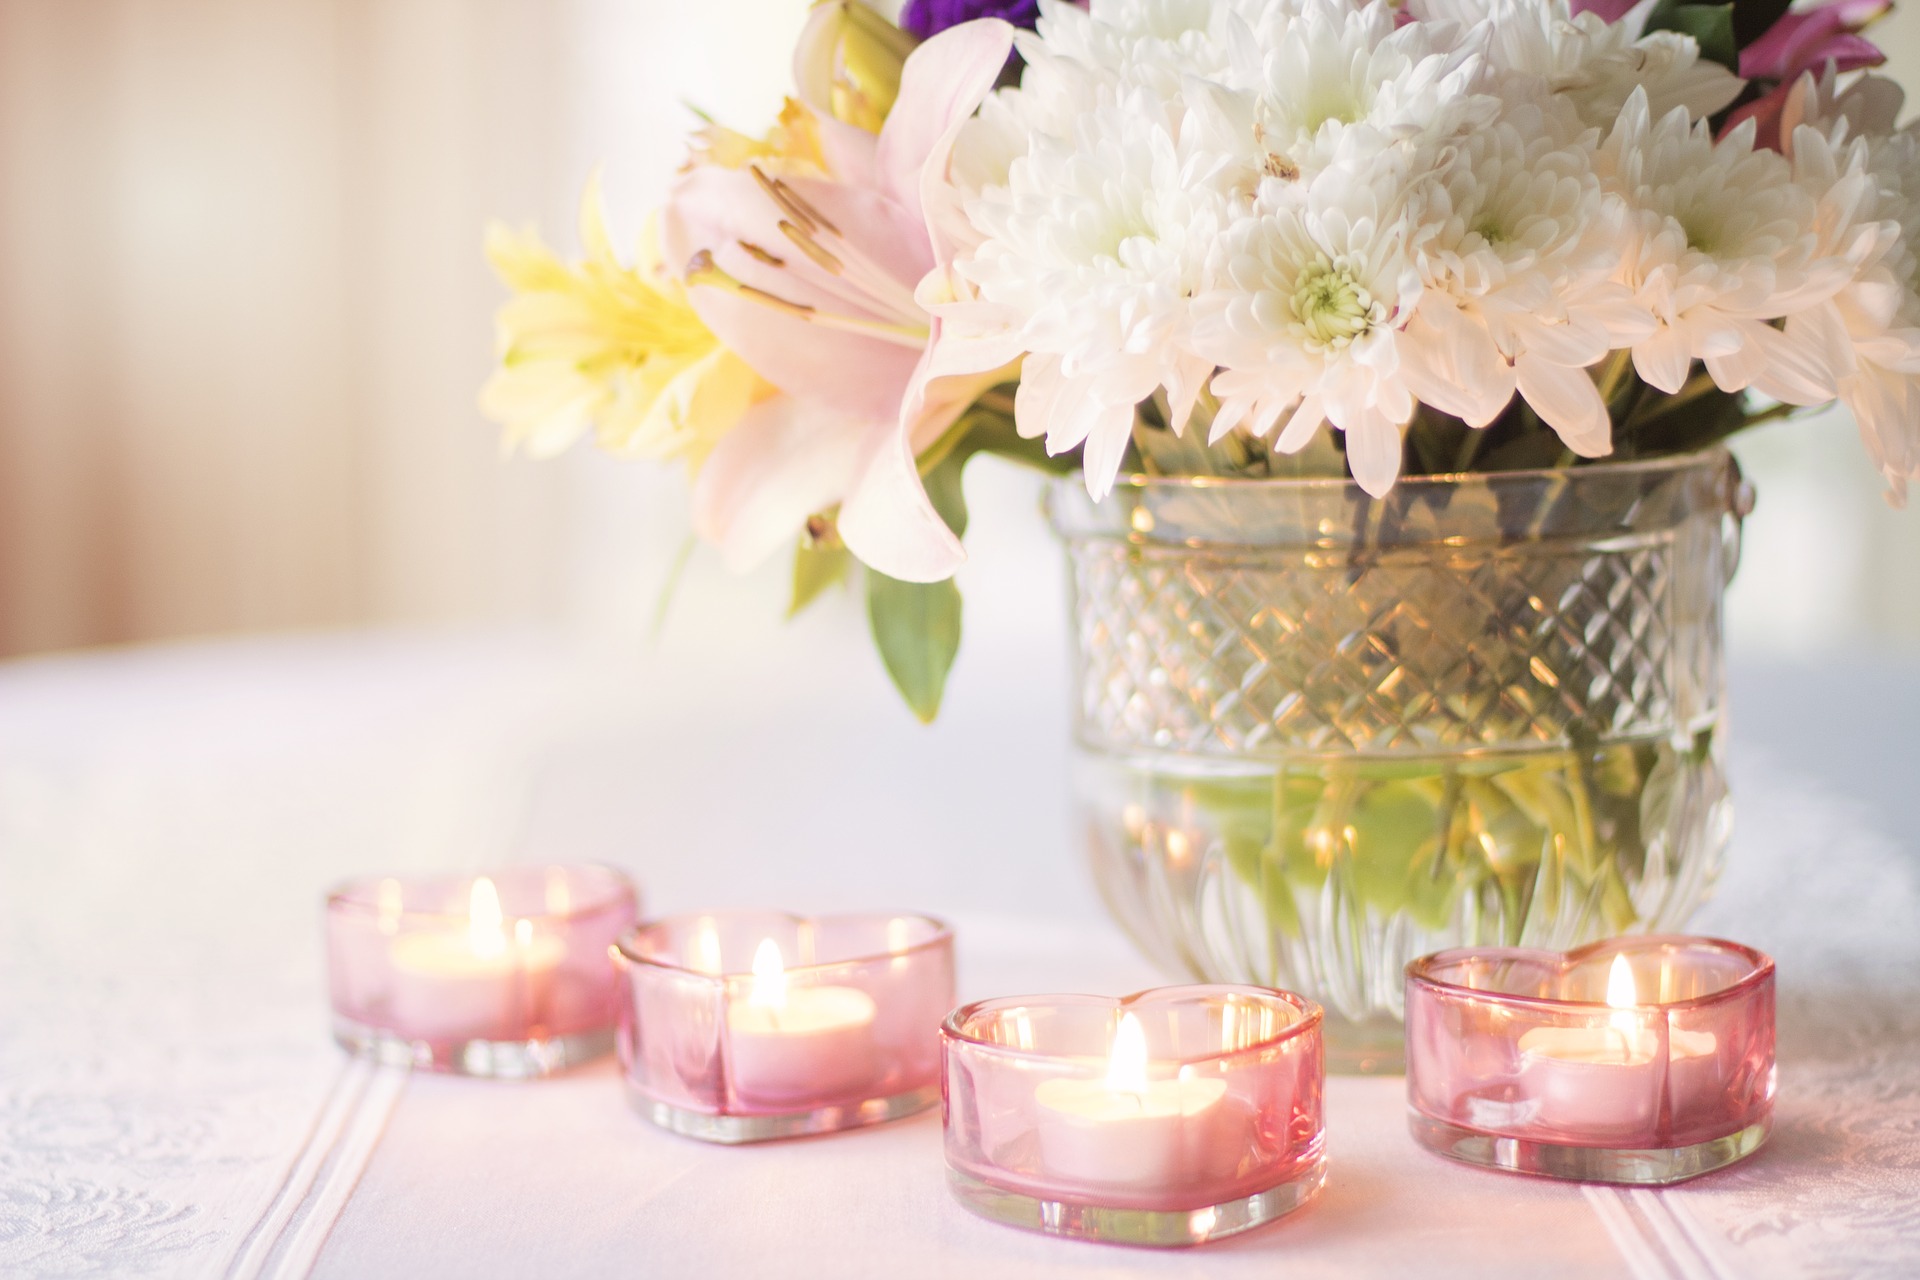 Por qué usar velas aromáticas en tu casa? Aquí las razones